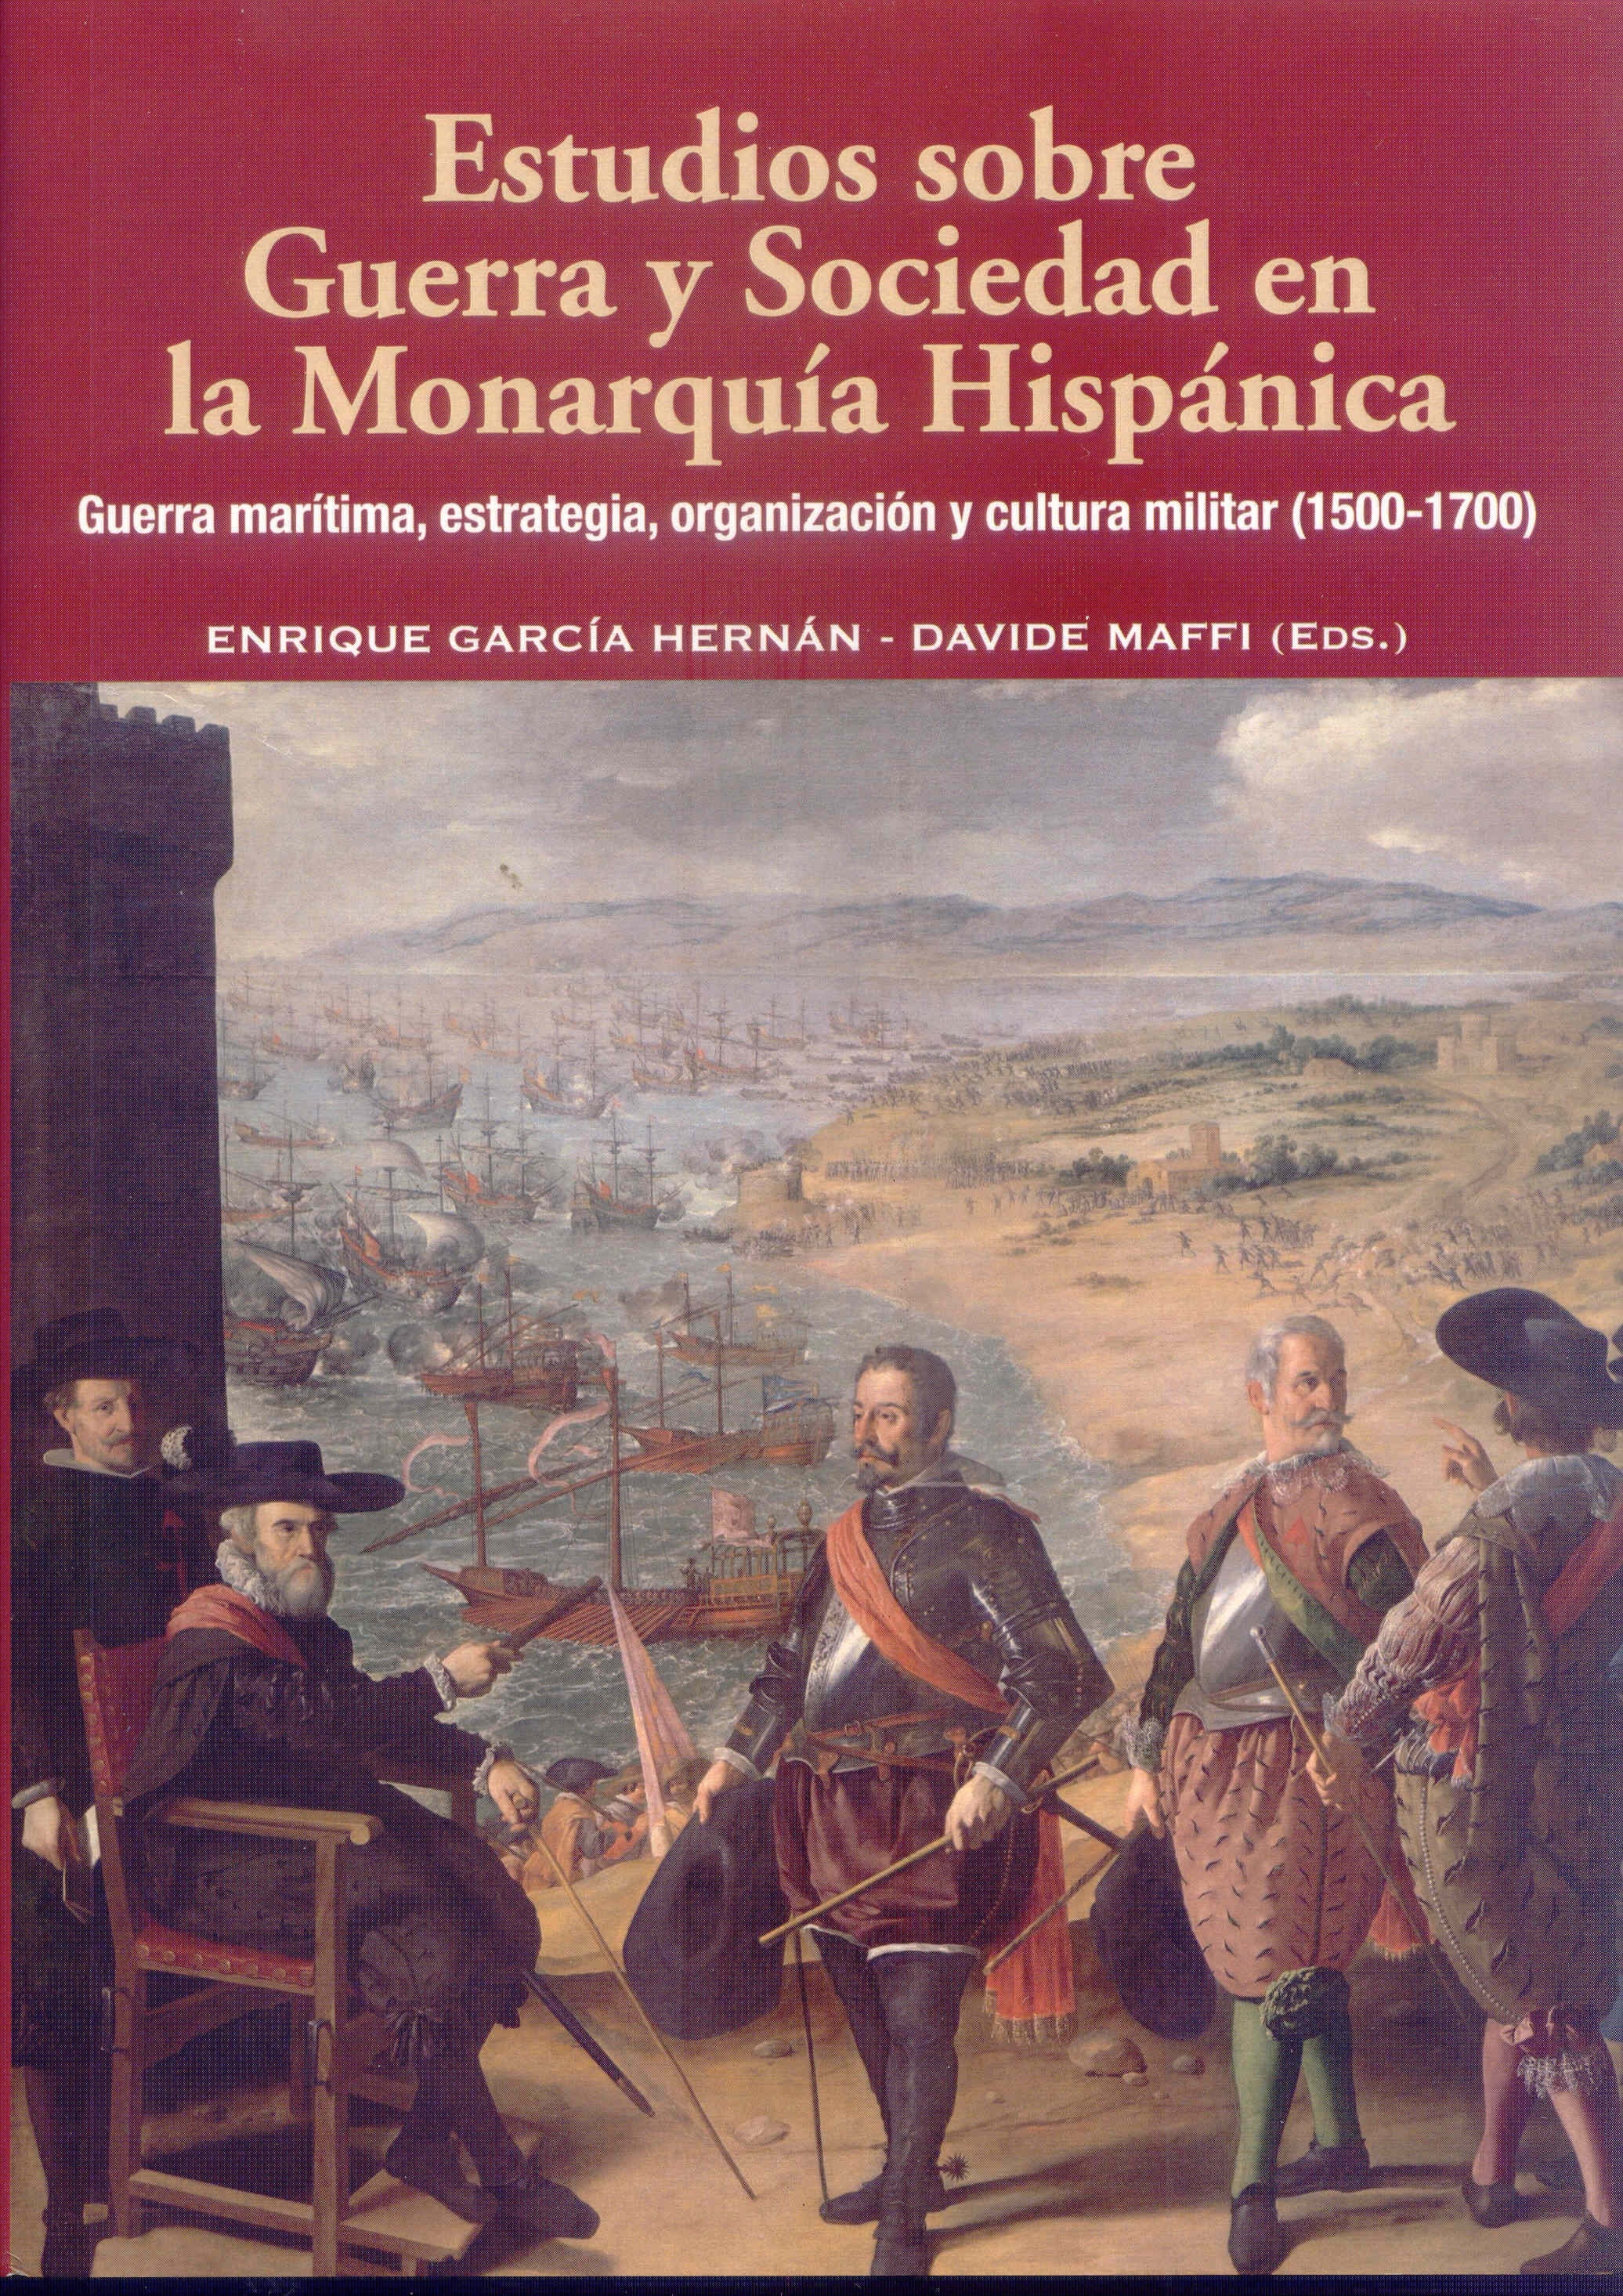 Estudios sobre Guerra y Sociedad en la Monarquía Hispánica "Guerra marítima, estrategia, organización y cultura militar (150"